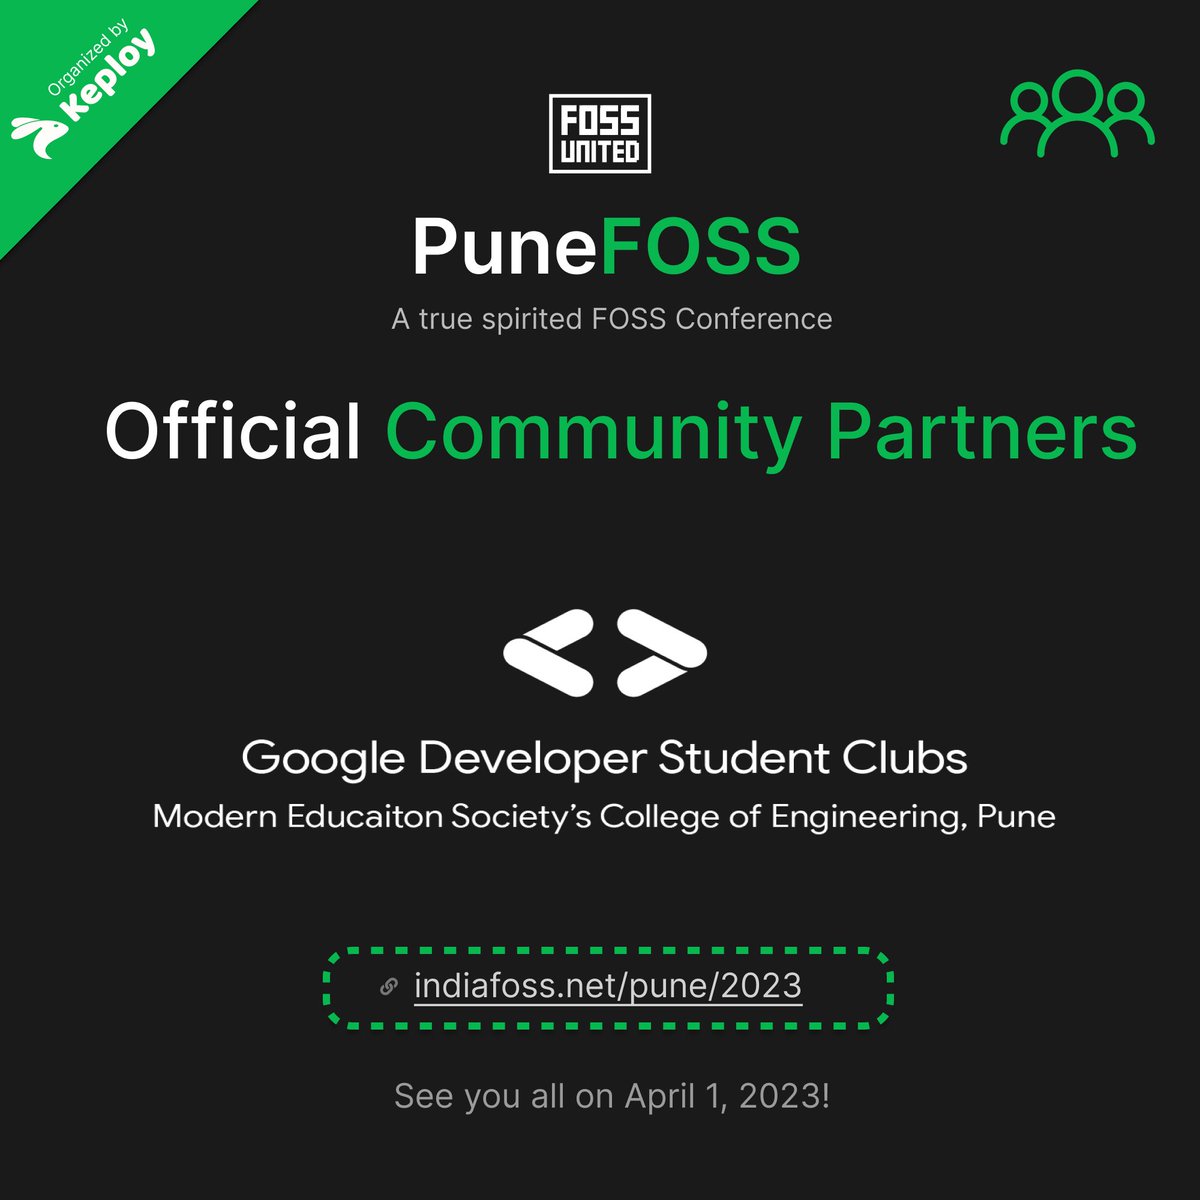 GDSC MESCOE, Pune  🤝 PuneFOSS

@gdscmescoe @fossunited @Keployio @punefoss 
#PuneFOSS #Pune #OpenSource #fossunited #PuneFOSS2023 #FreeAndOpenSourceSoftware #gdsc #gdsc_cummins #gdsc_ghrcem #gdsc_mescoe #gdsc_pict

(4/6)